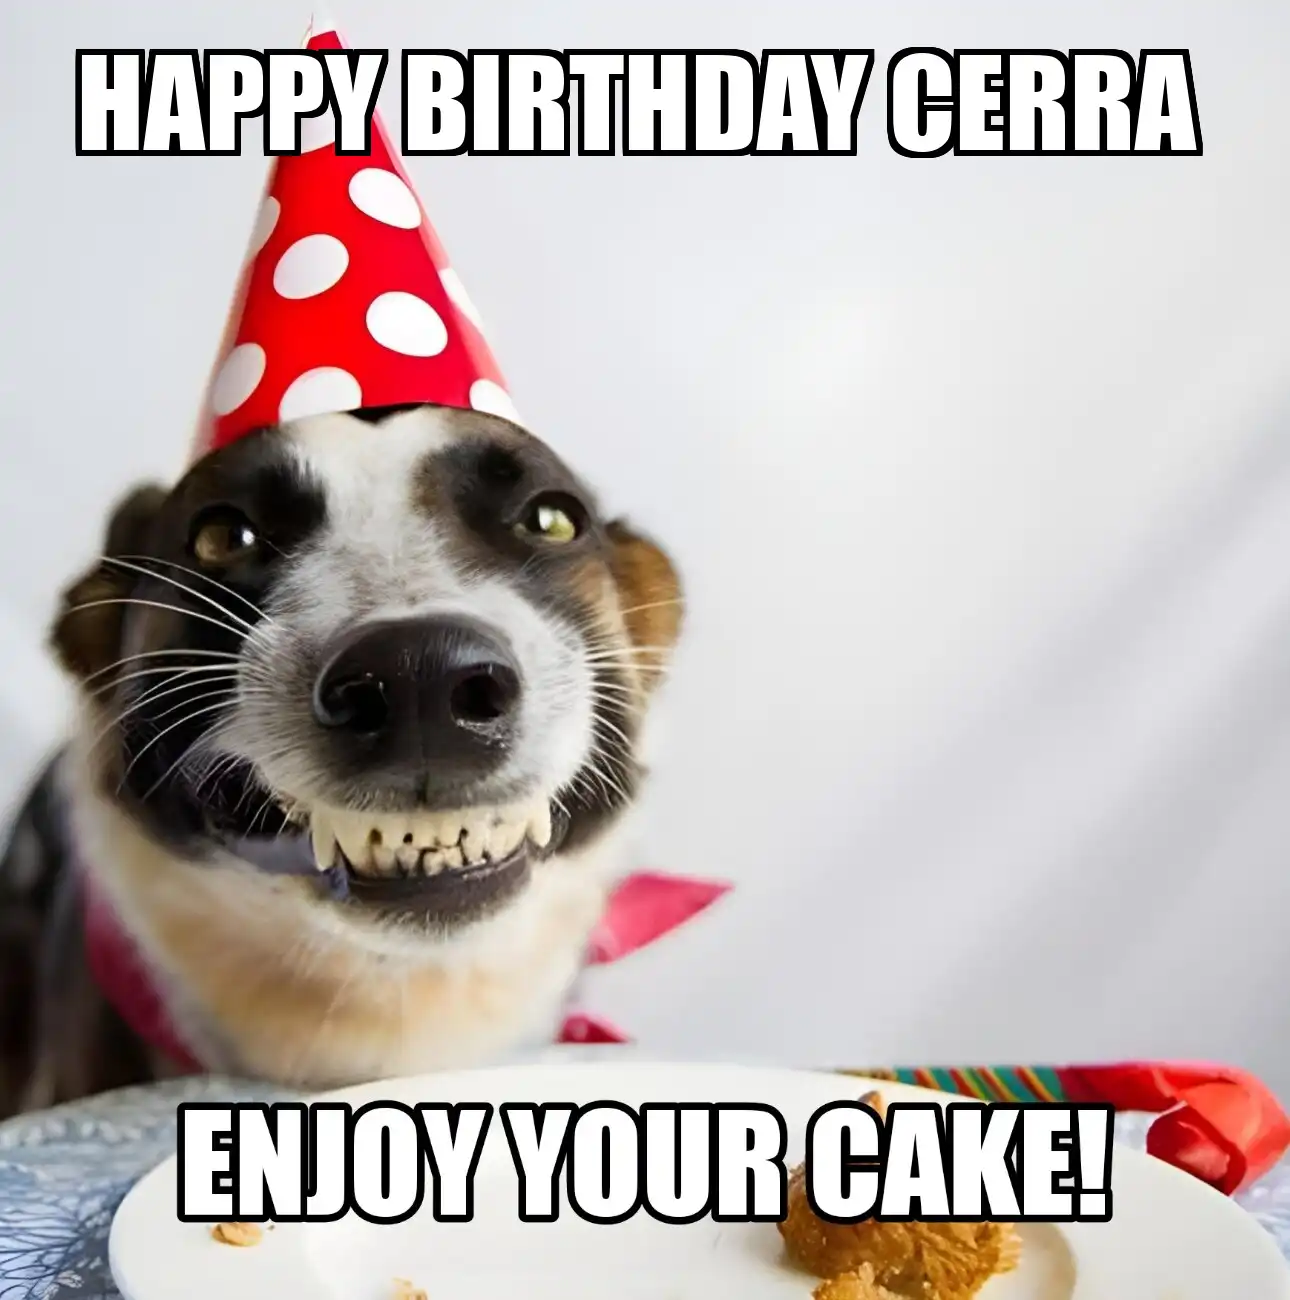 Happy Birthday Cerra Enjoy Your Cake Dog Meme